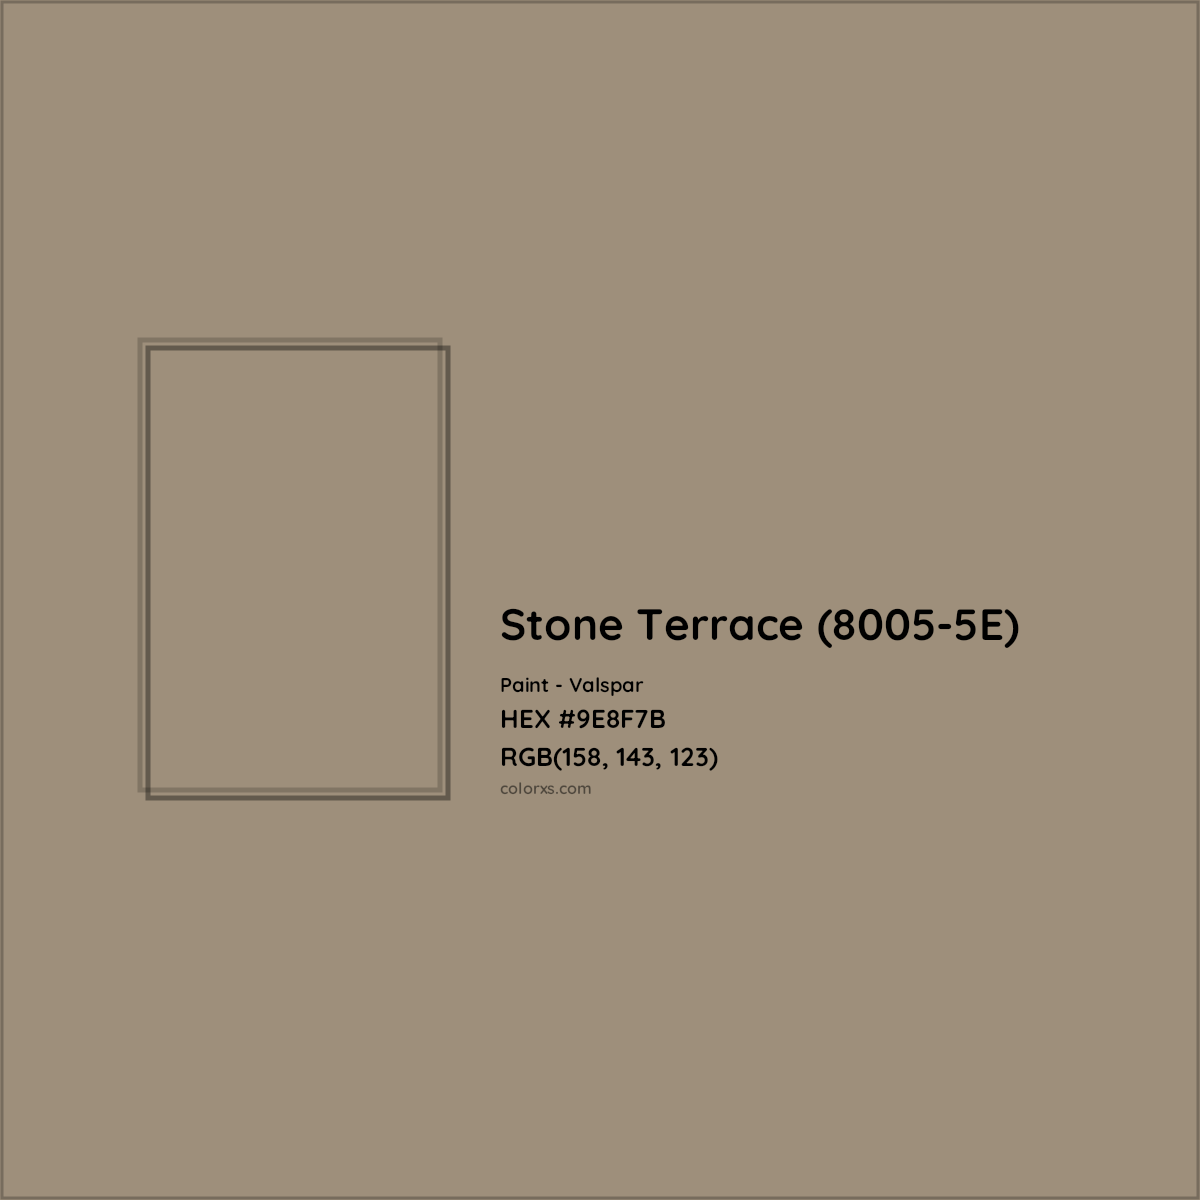 HEX #9E8F7B Stone Terrace (8005-5E) Paint Valspar - Color Code